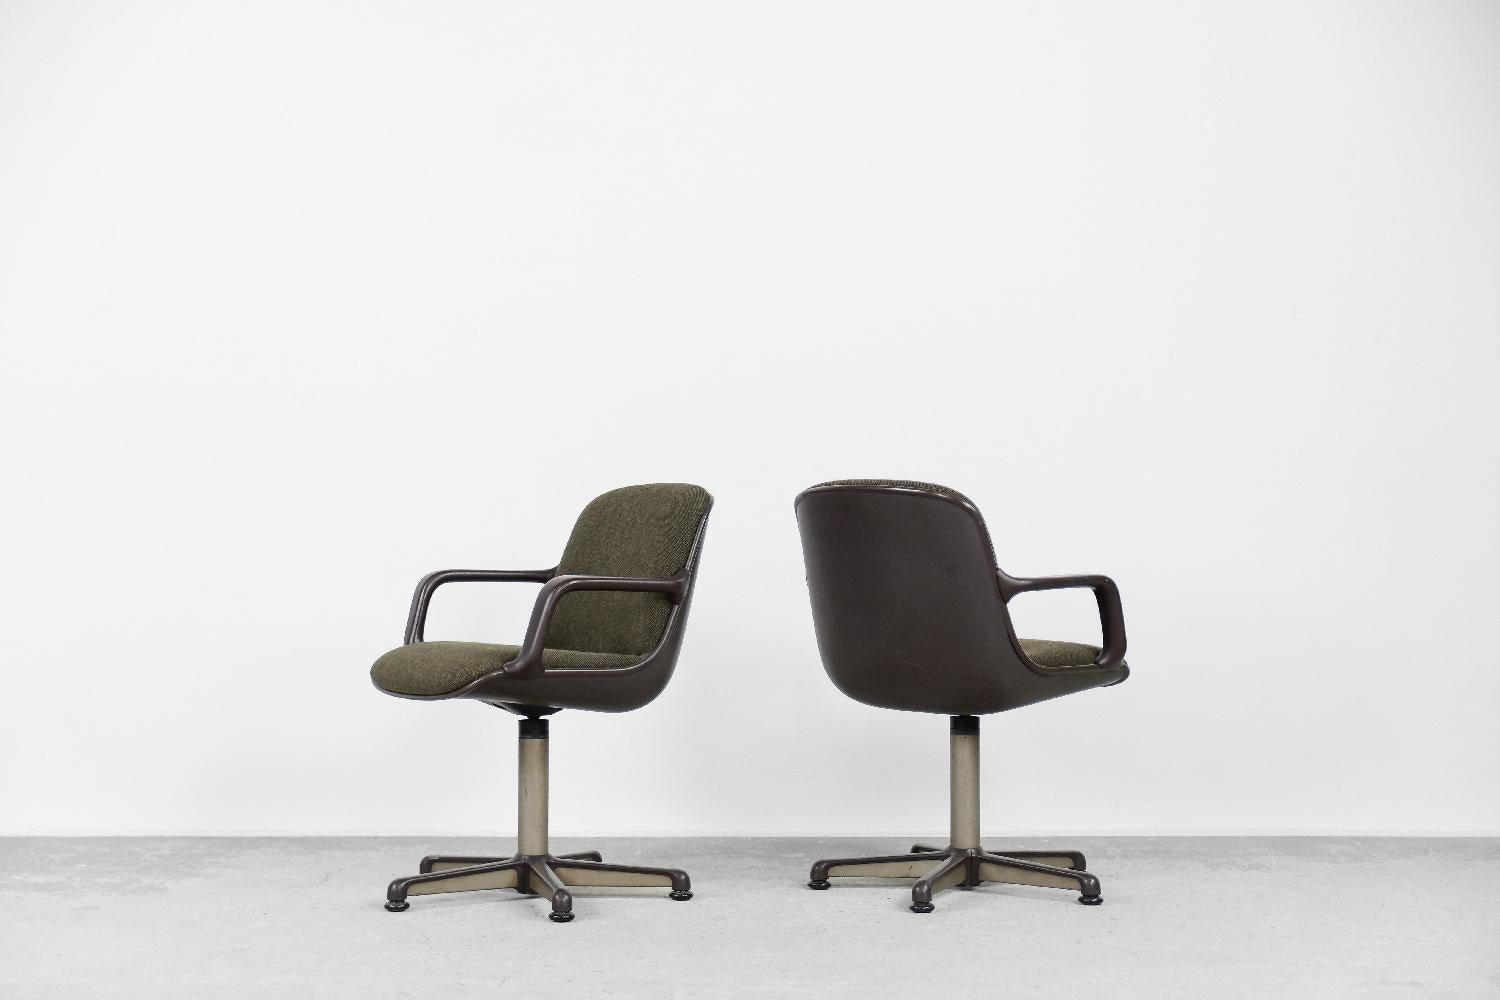 Cette paire de fauteuils de bureau a été conçue par Charles Pollock pour le fabricant allemand Comforto dans les années 70. Les sièges sont fabriqués en plastique brun durable et en tissu de haute qualité de couleur olive. Un pied pivotant ou des